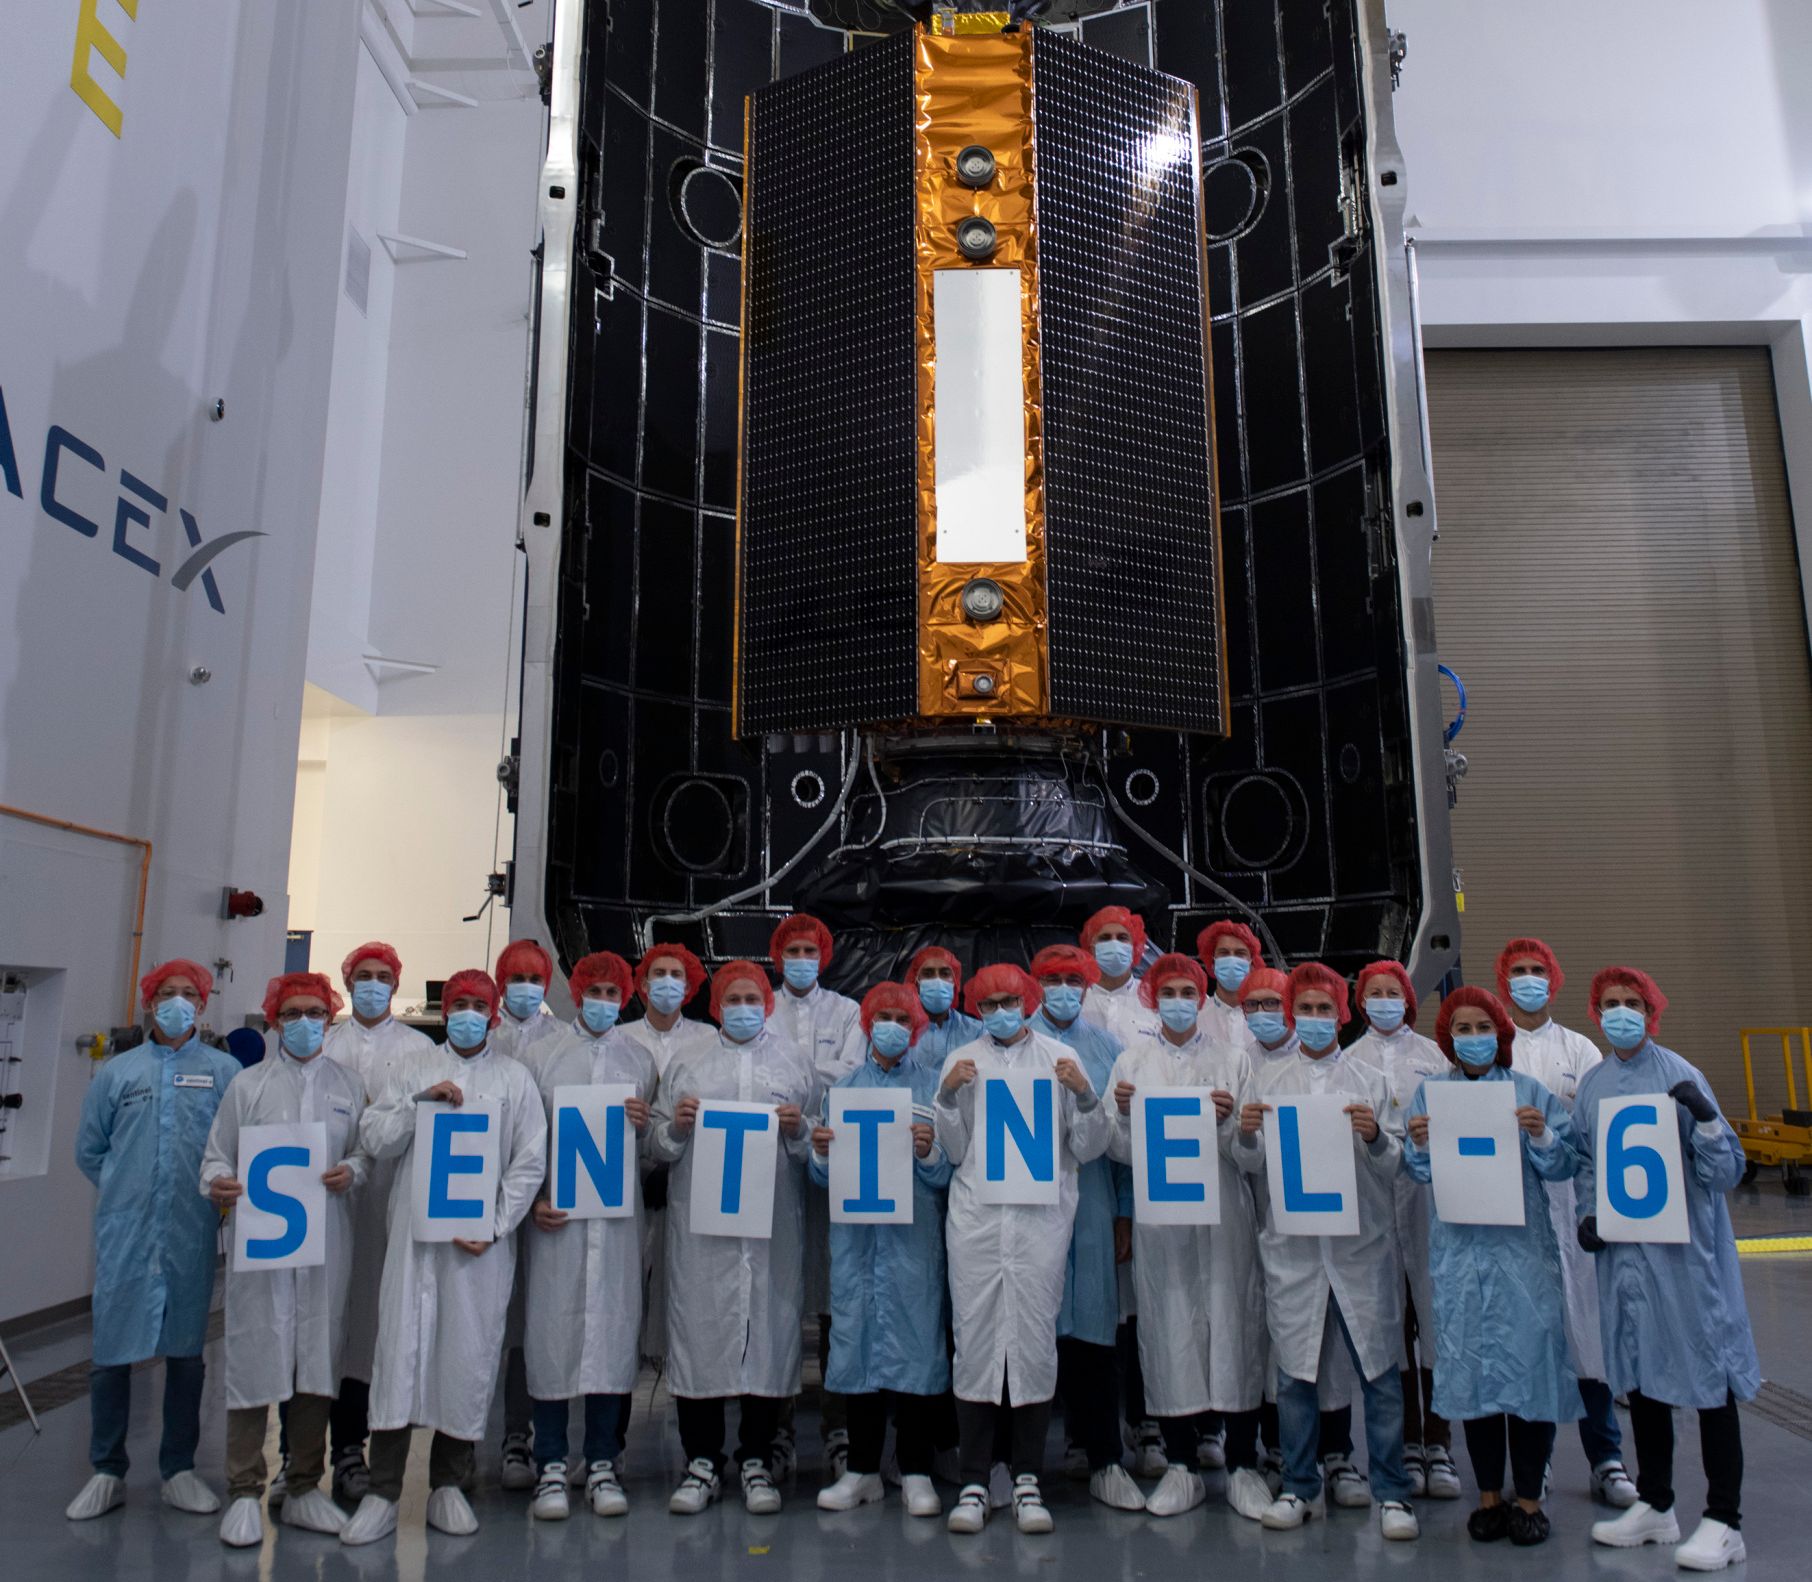 Bevor der Umweltsatellit Sentinel-6 Michael Freilich in den Halbschalen der Falcon-9 Raketenverkleidung verschwindet, macht das Launch Campaign Team noch ein letztes Gruppenbild mit dem technischen Meisterwerk. Am 21. November 2020 wird der Satellit seine Reise antreten. 